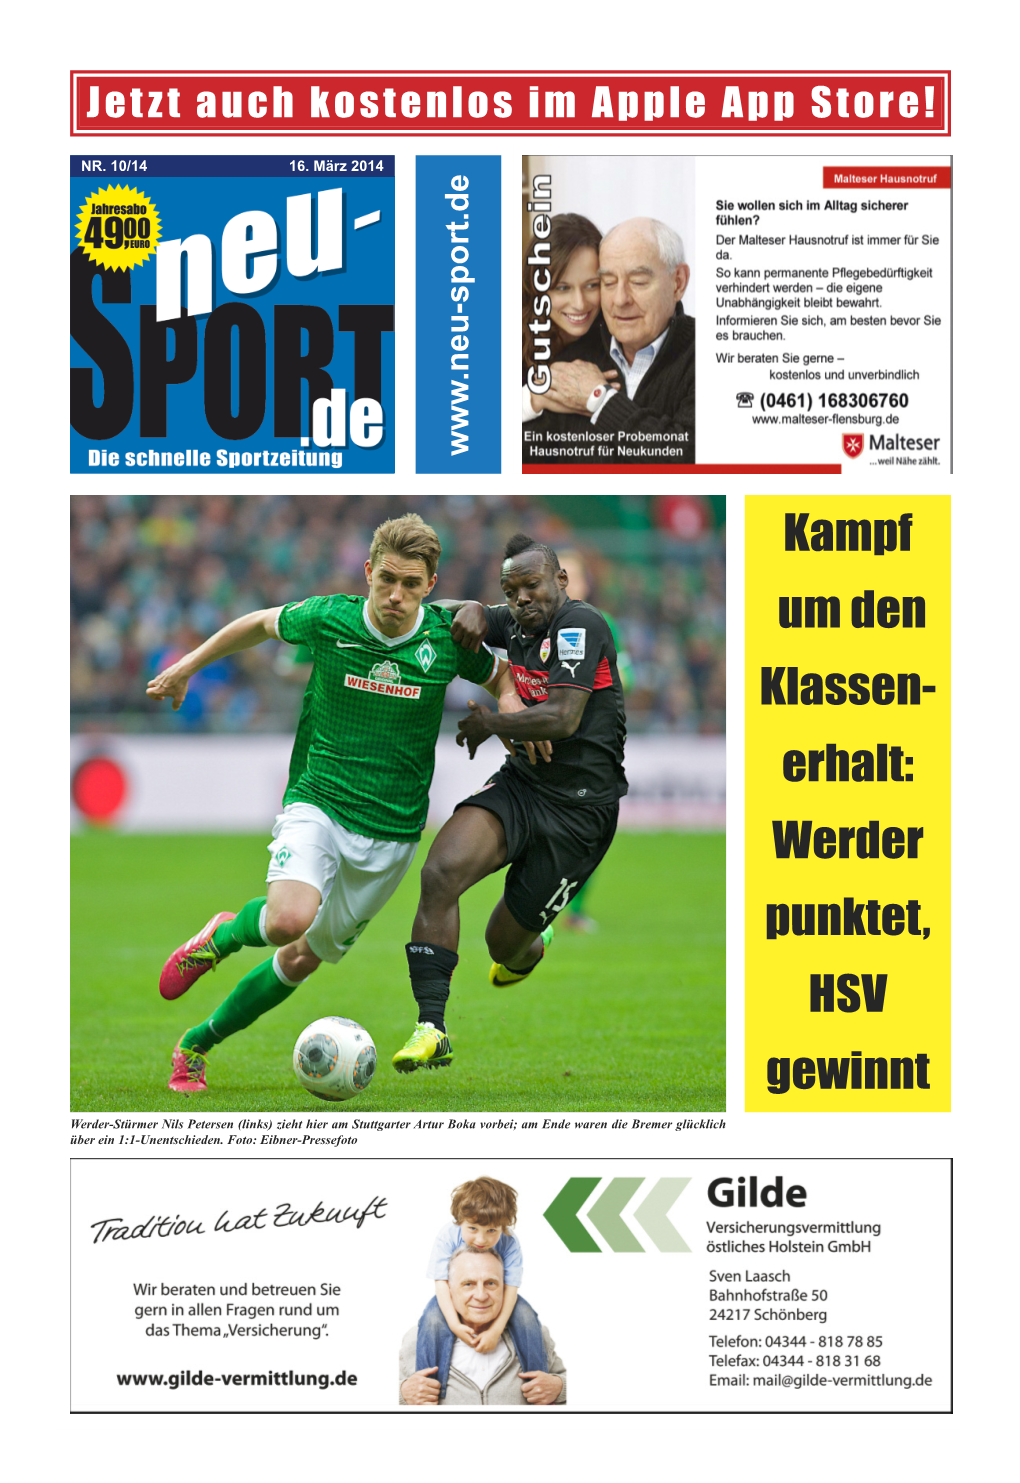 Kampf Um Den Klassen- Erhalt: Werder Punktet, HSV Gewinnt